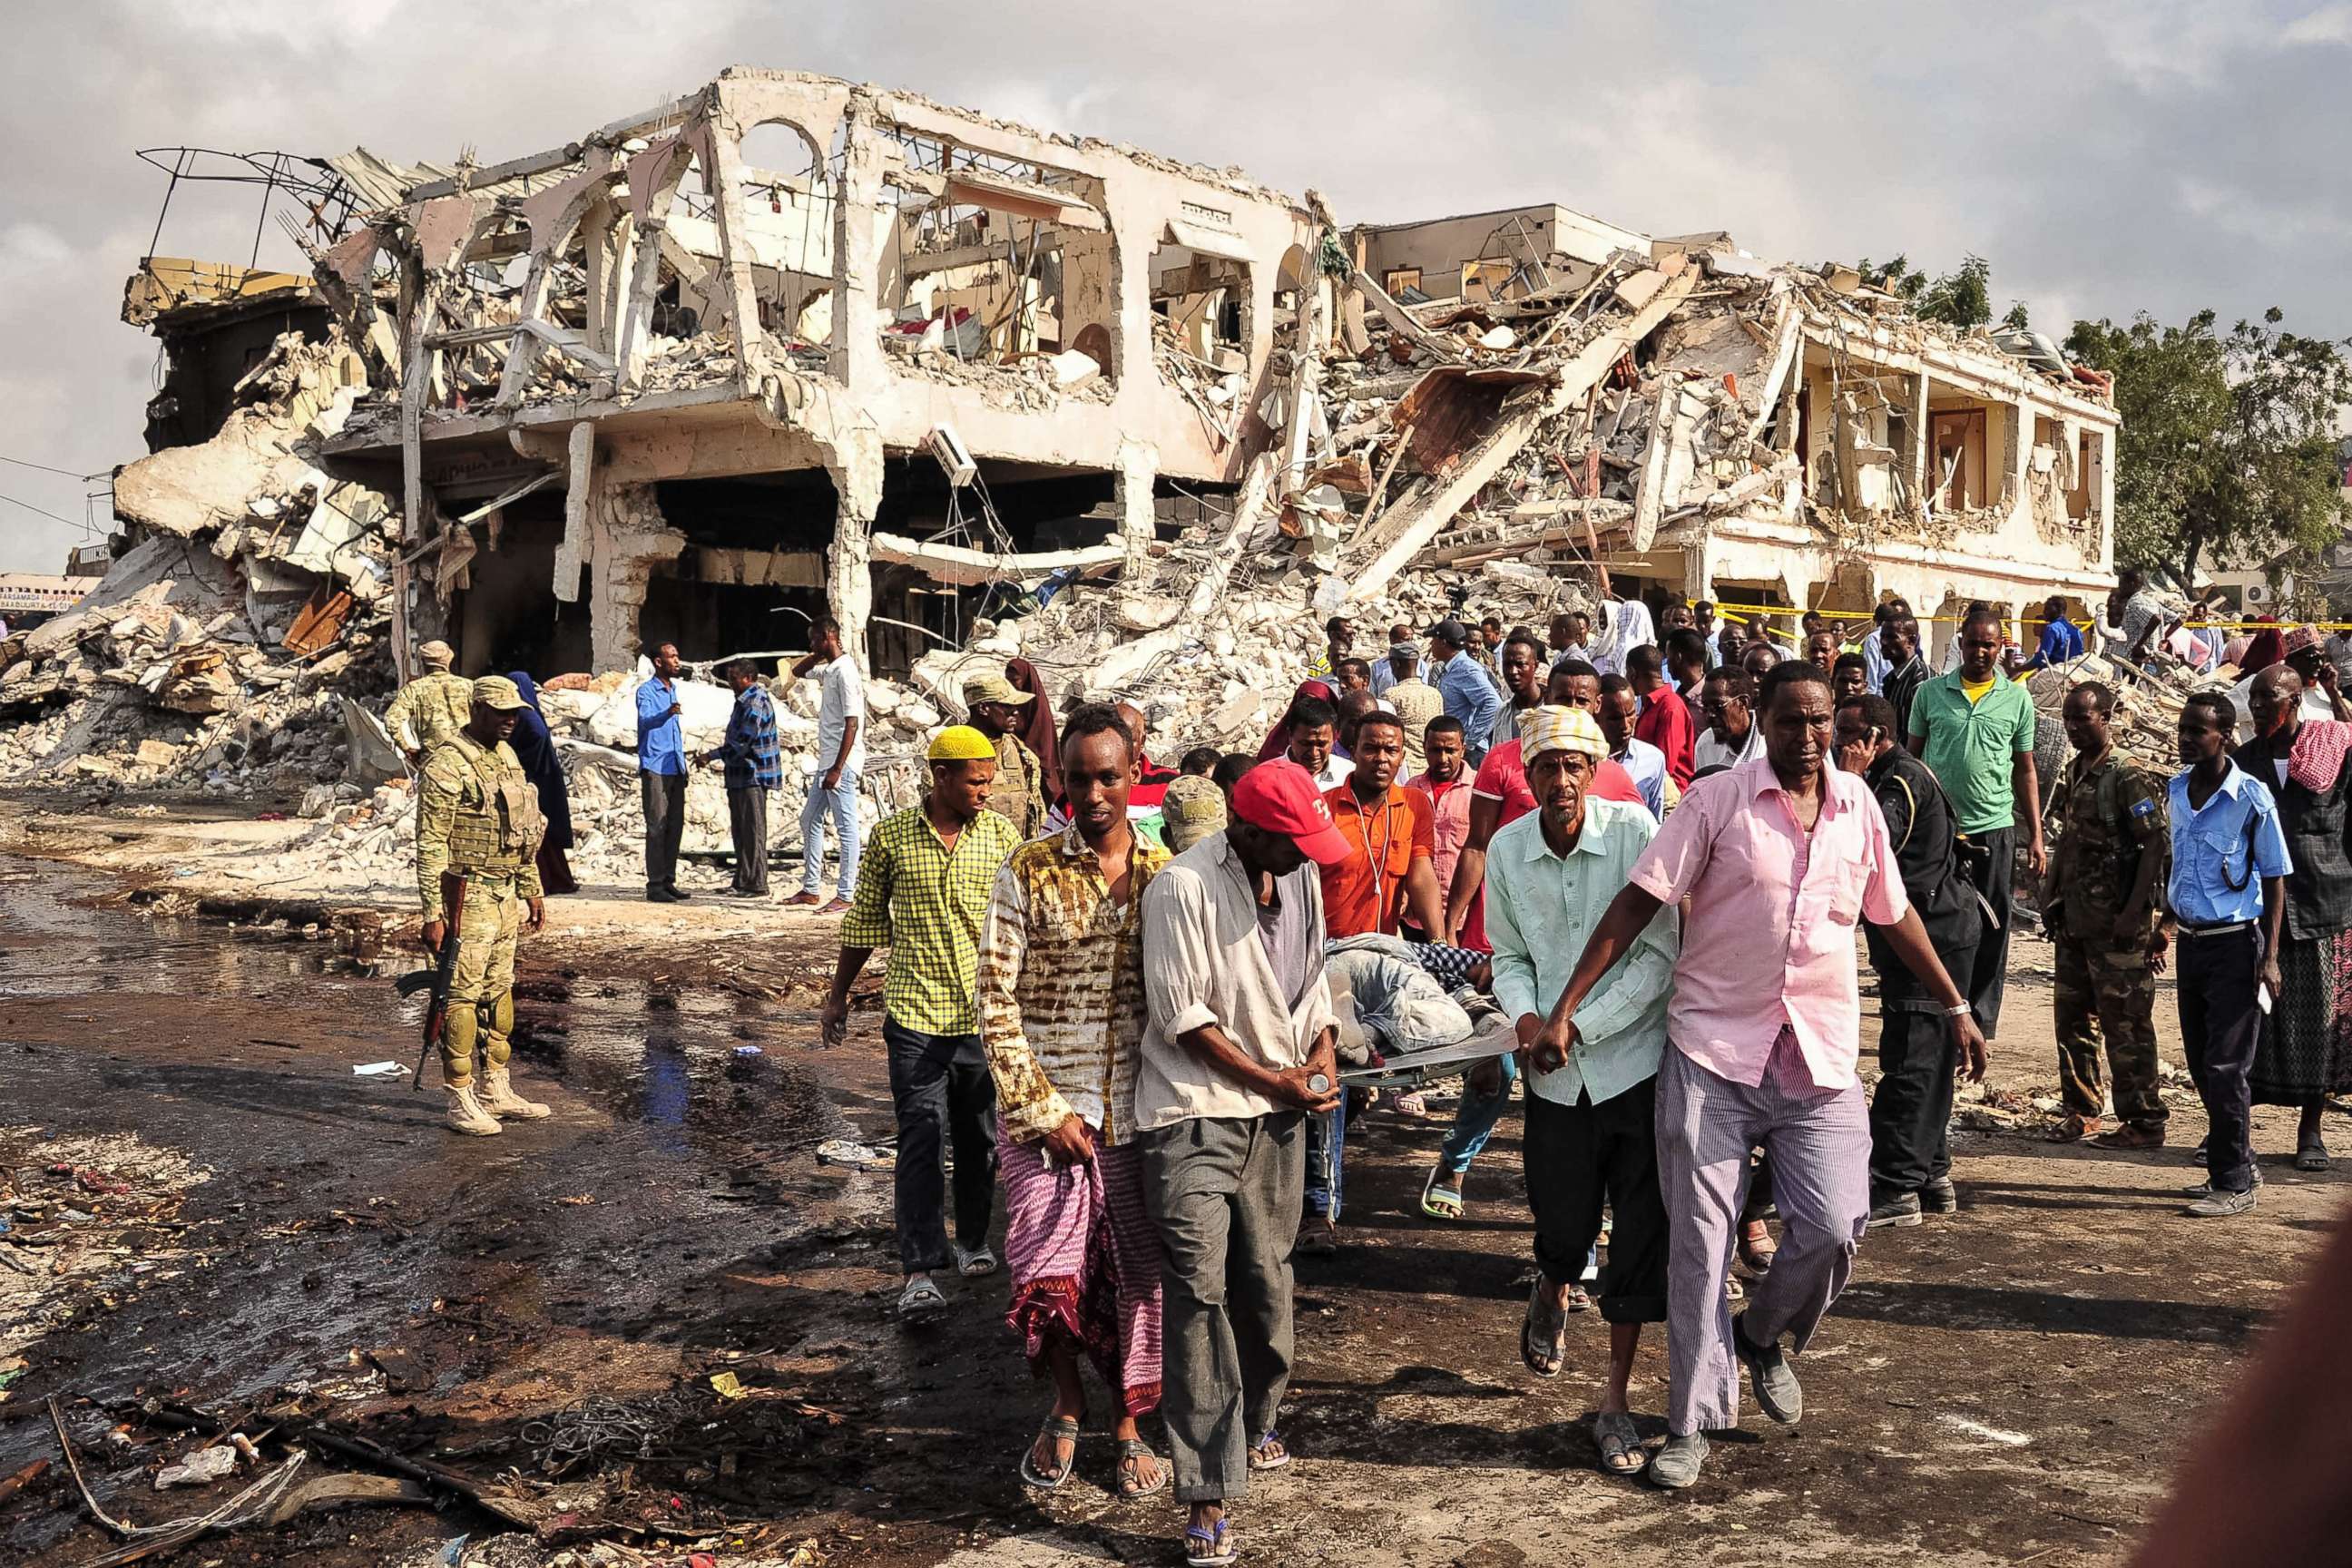 Могадишо столица Сомали. Теракт в могадишо отель